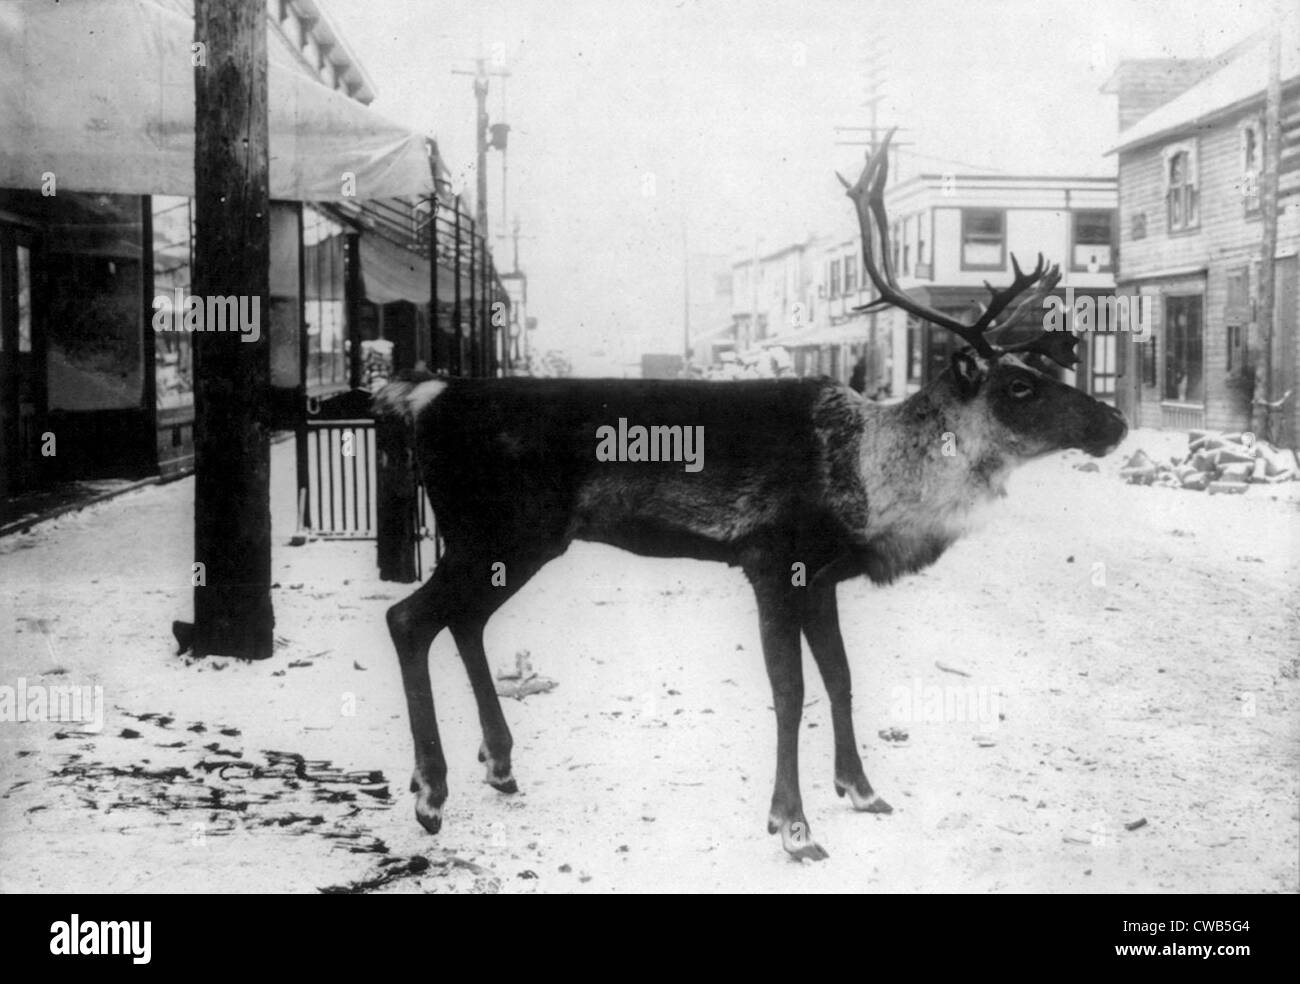 Präparatoren, ausgestopfte Rentiere auf Straße, eine Metzgerei Zeichen, Dawson, Yukon Territorium, Kanada, Foto, ca. 1900-1923 Stockfoto